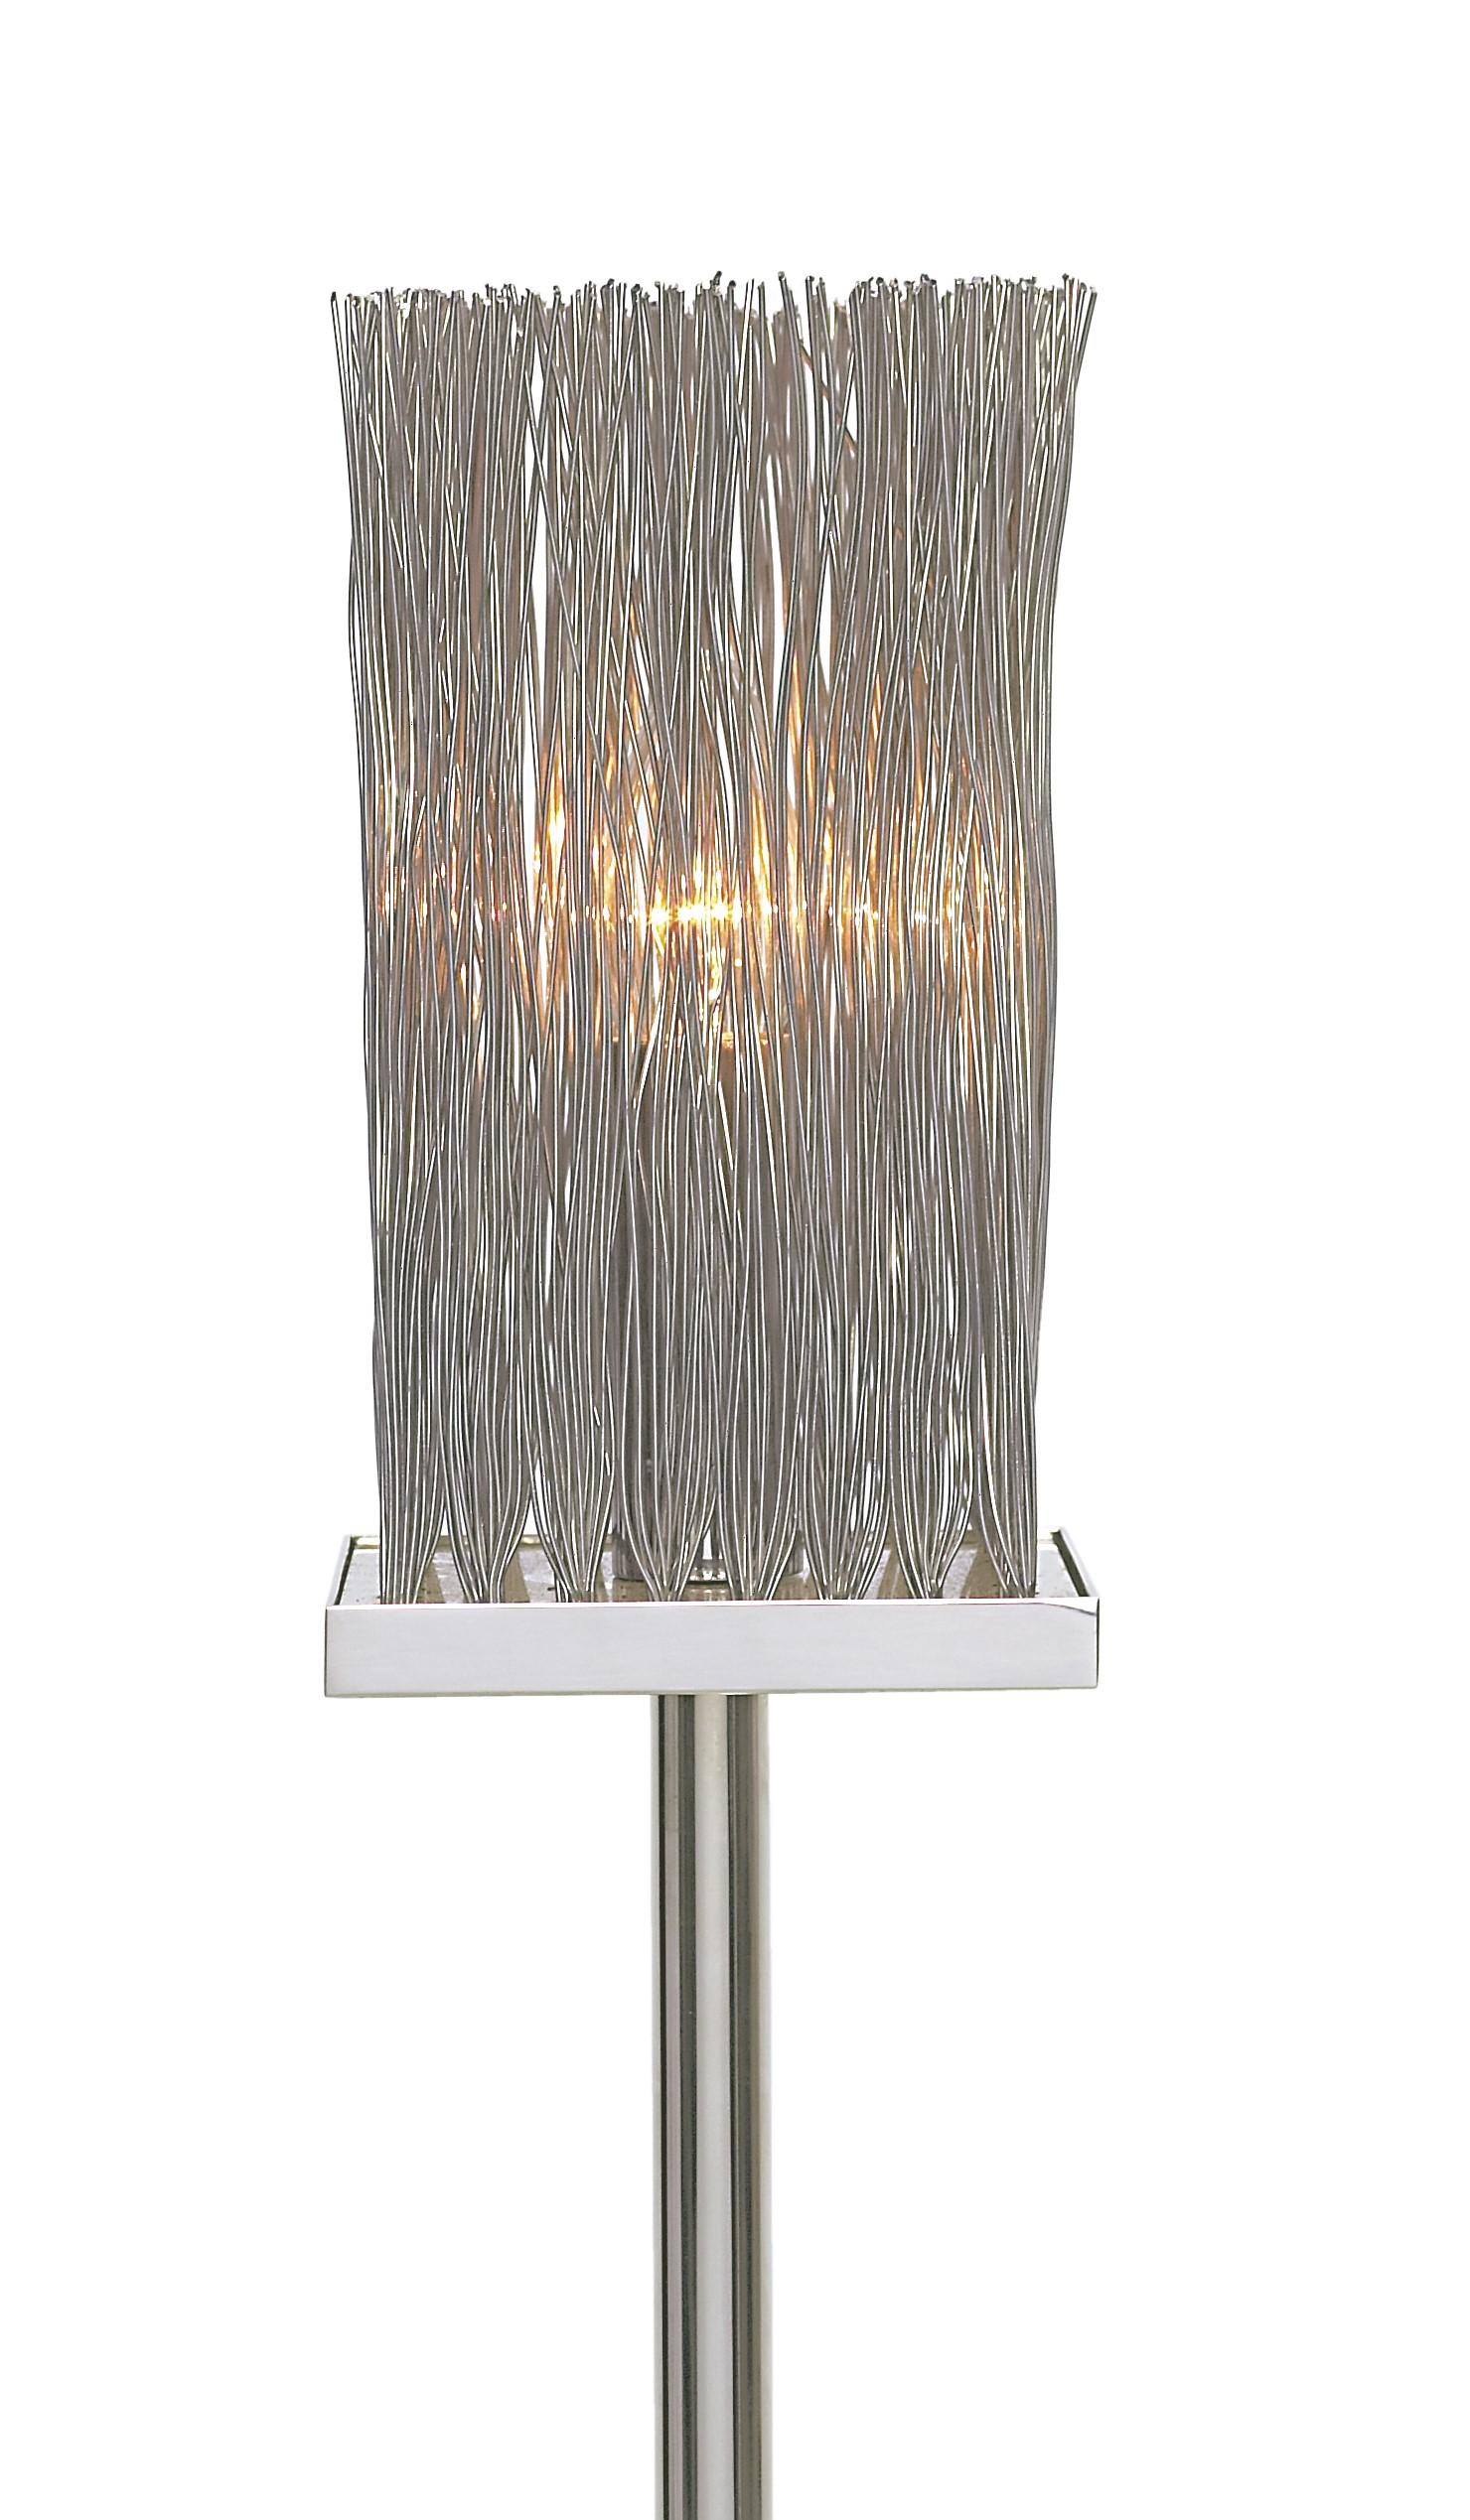 Tall Contemporary Modern Italian Wire Chrome Floor Lamp mit Chromsockel. Der Chromsockel ist ein schweres Chromteil, das für Stabilität sorgt. Diese verchromte Stehleuchte hat eine attraktive, verdrahtete Spitze, die das Licht durchlässt. 